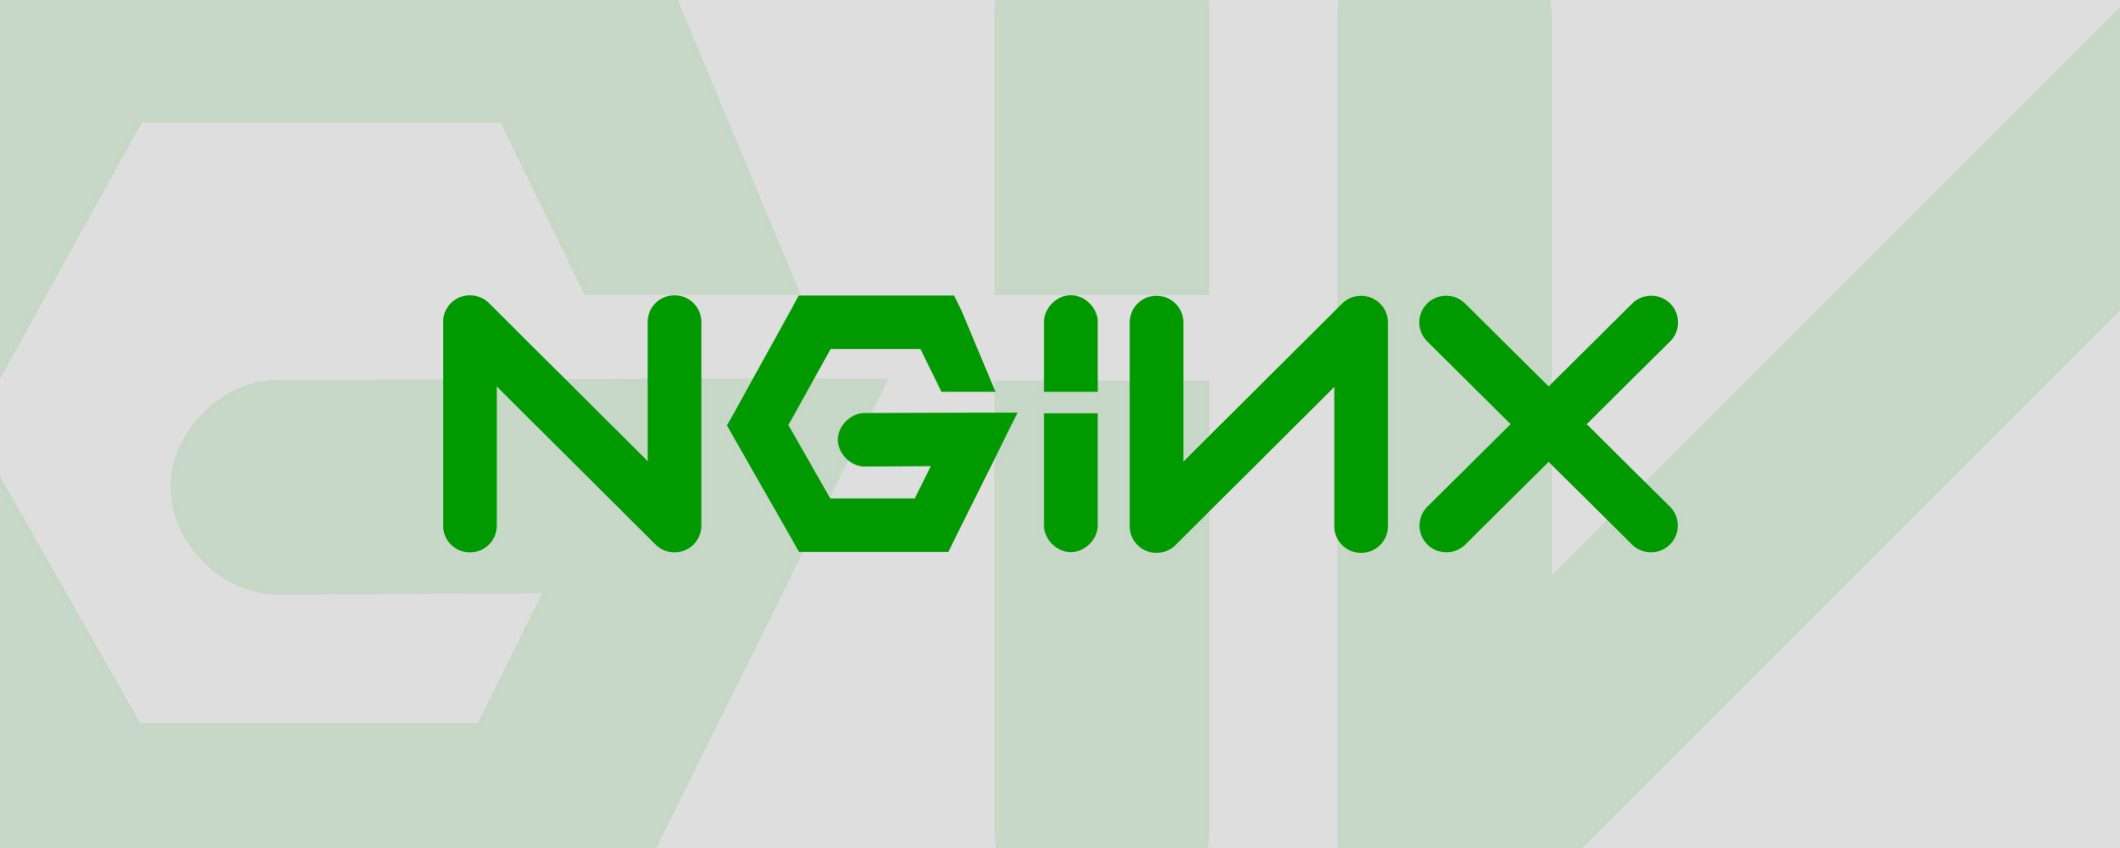 nginx perde una colonna portante (che lancia freenginx)